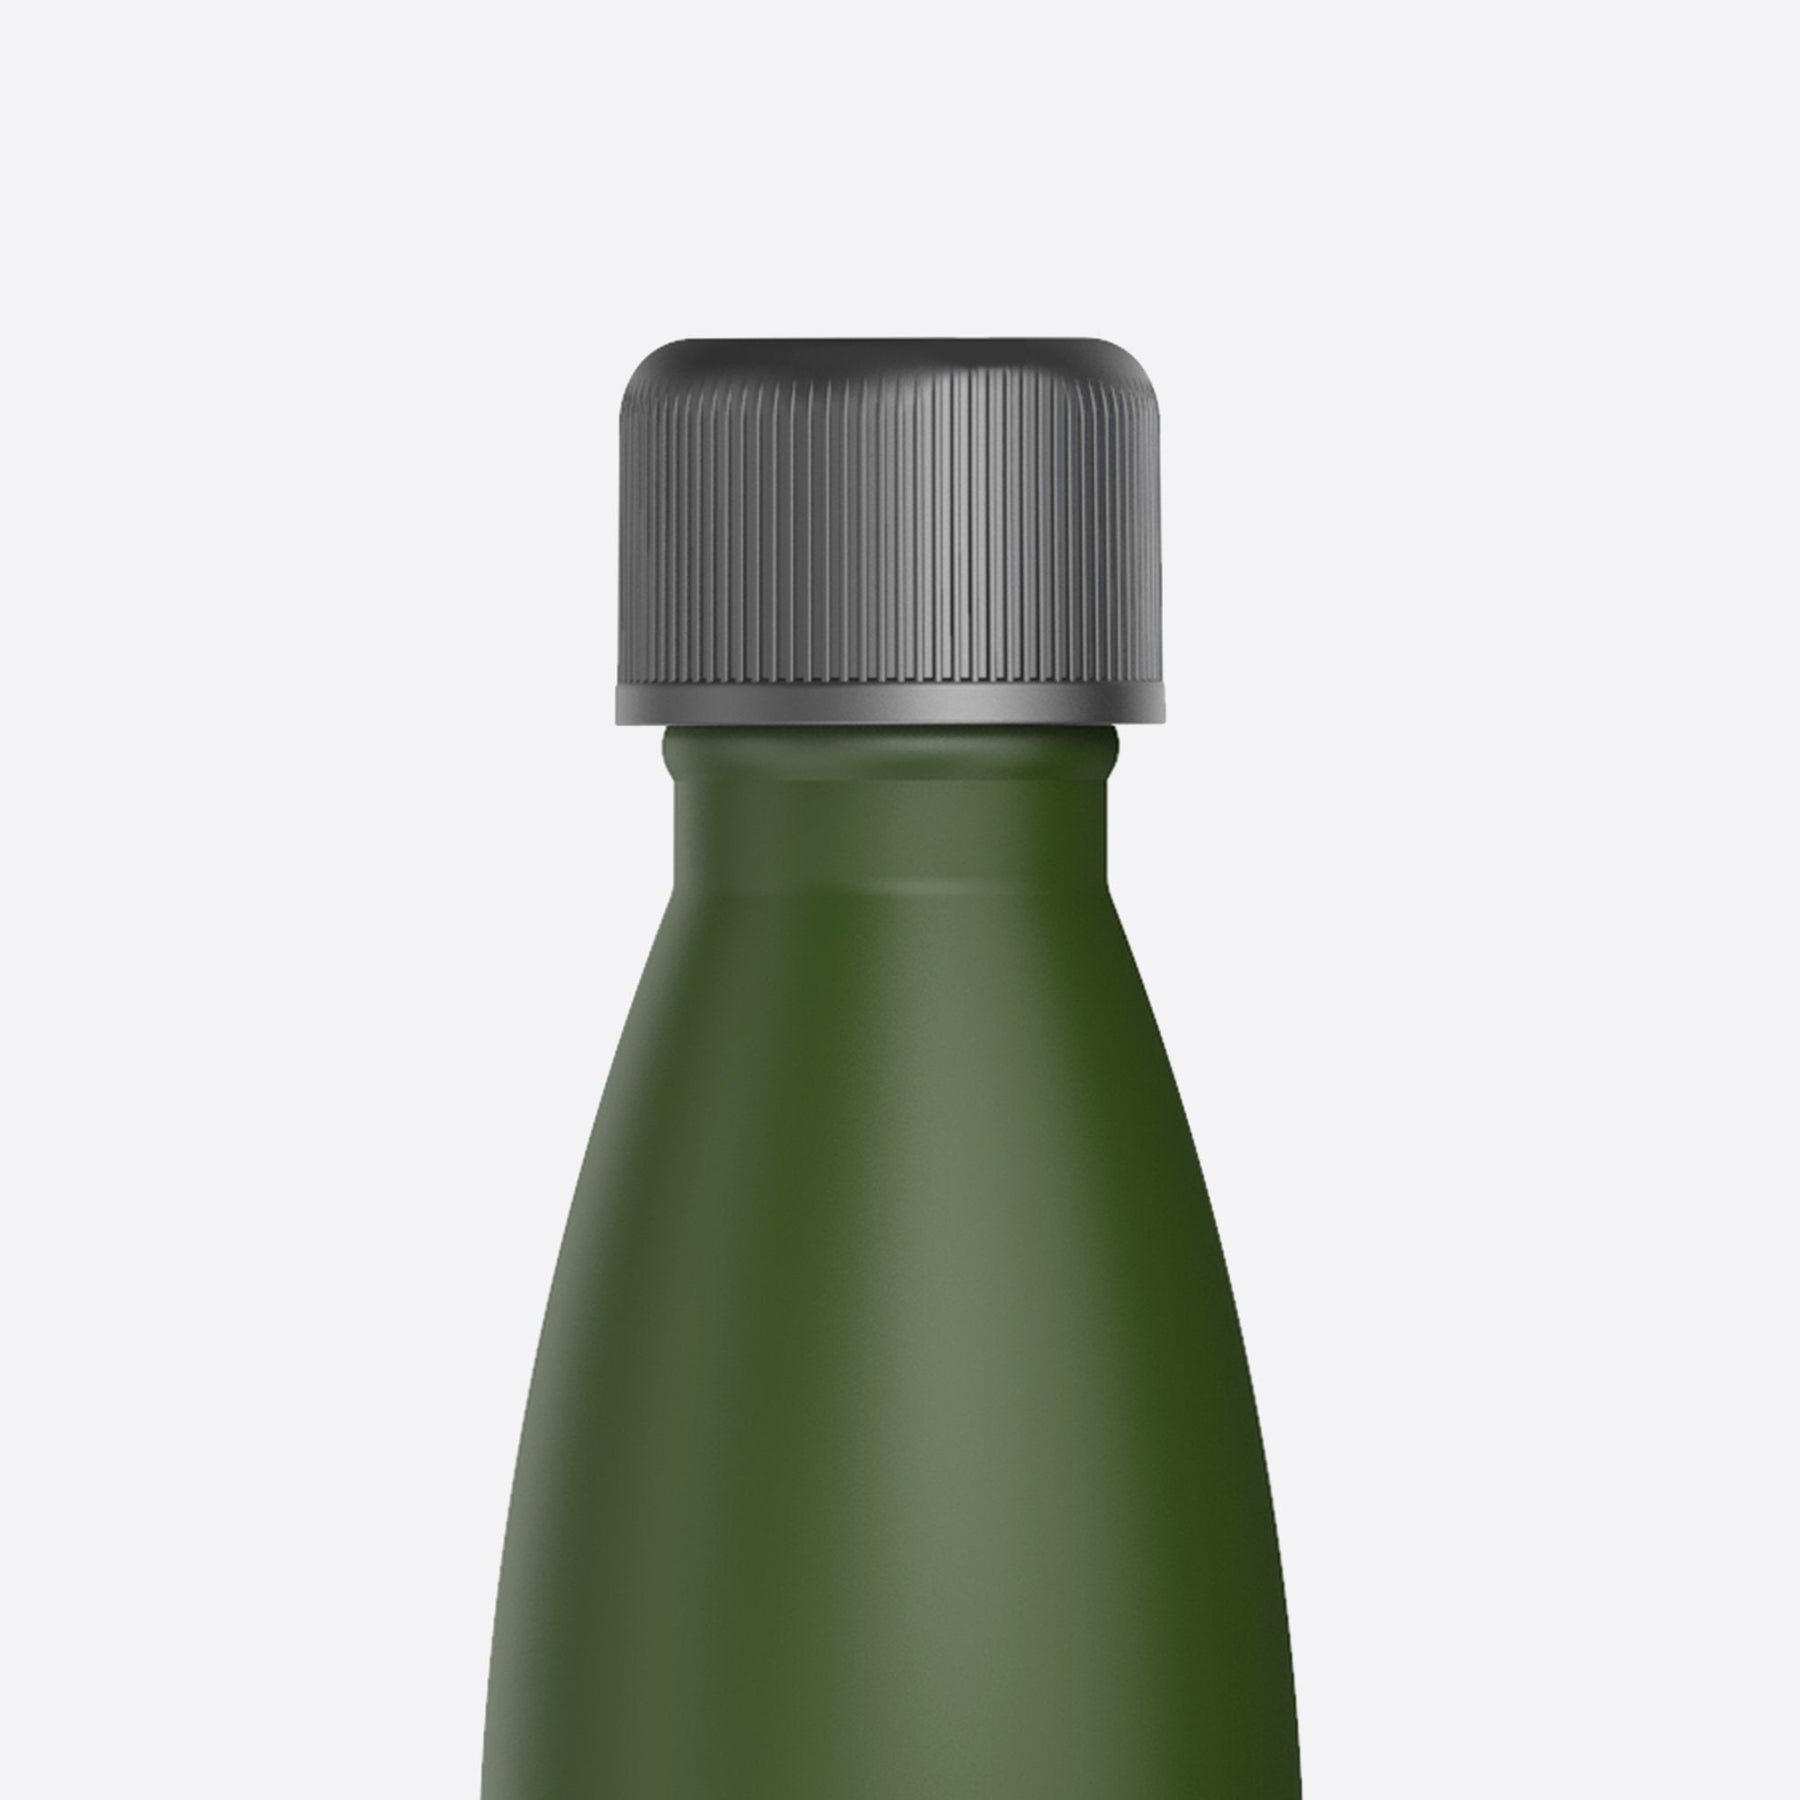 WAATR LYT - Self-Cleaning Water Bottle - Cool Gray - Gray - 32